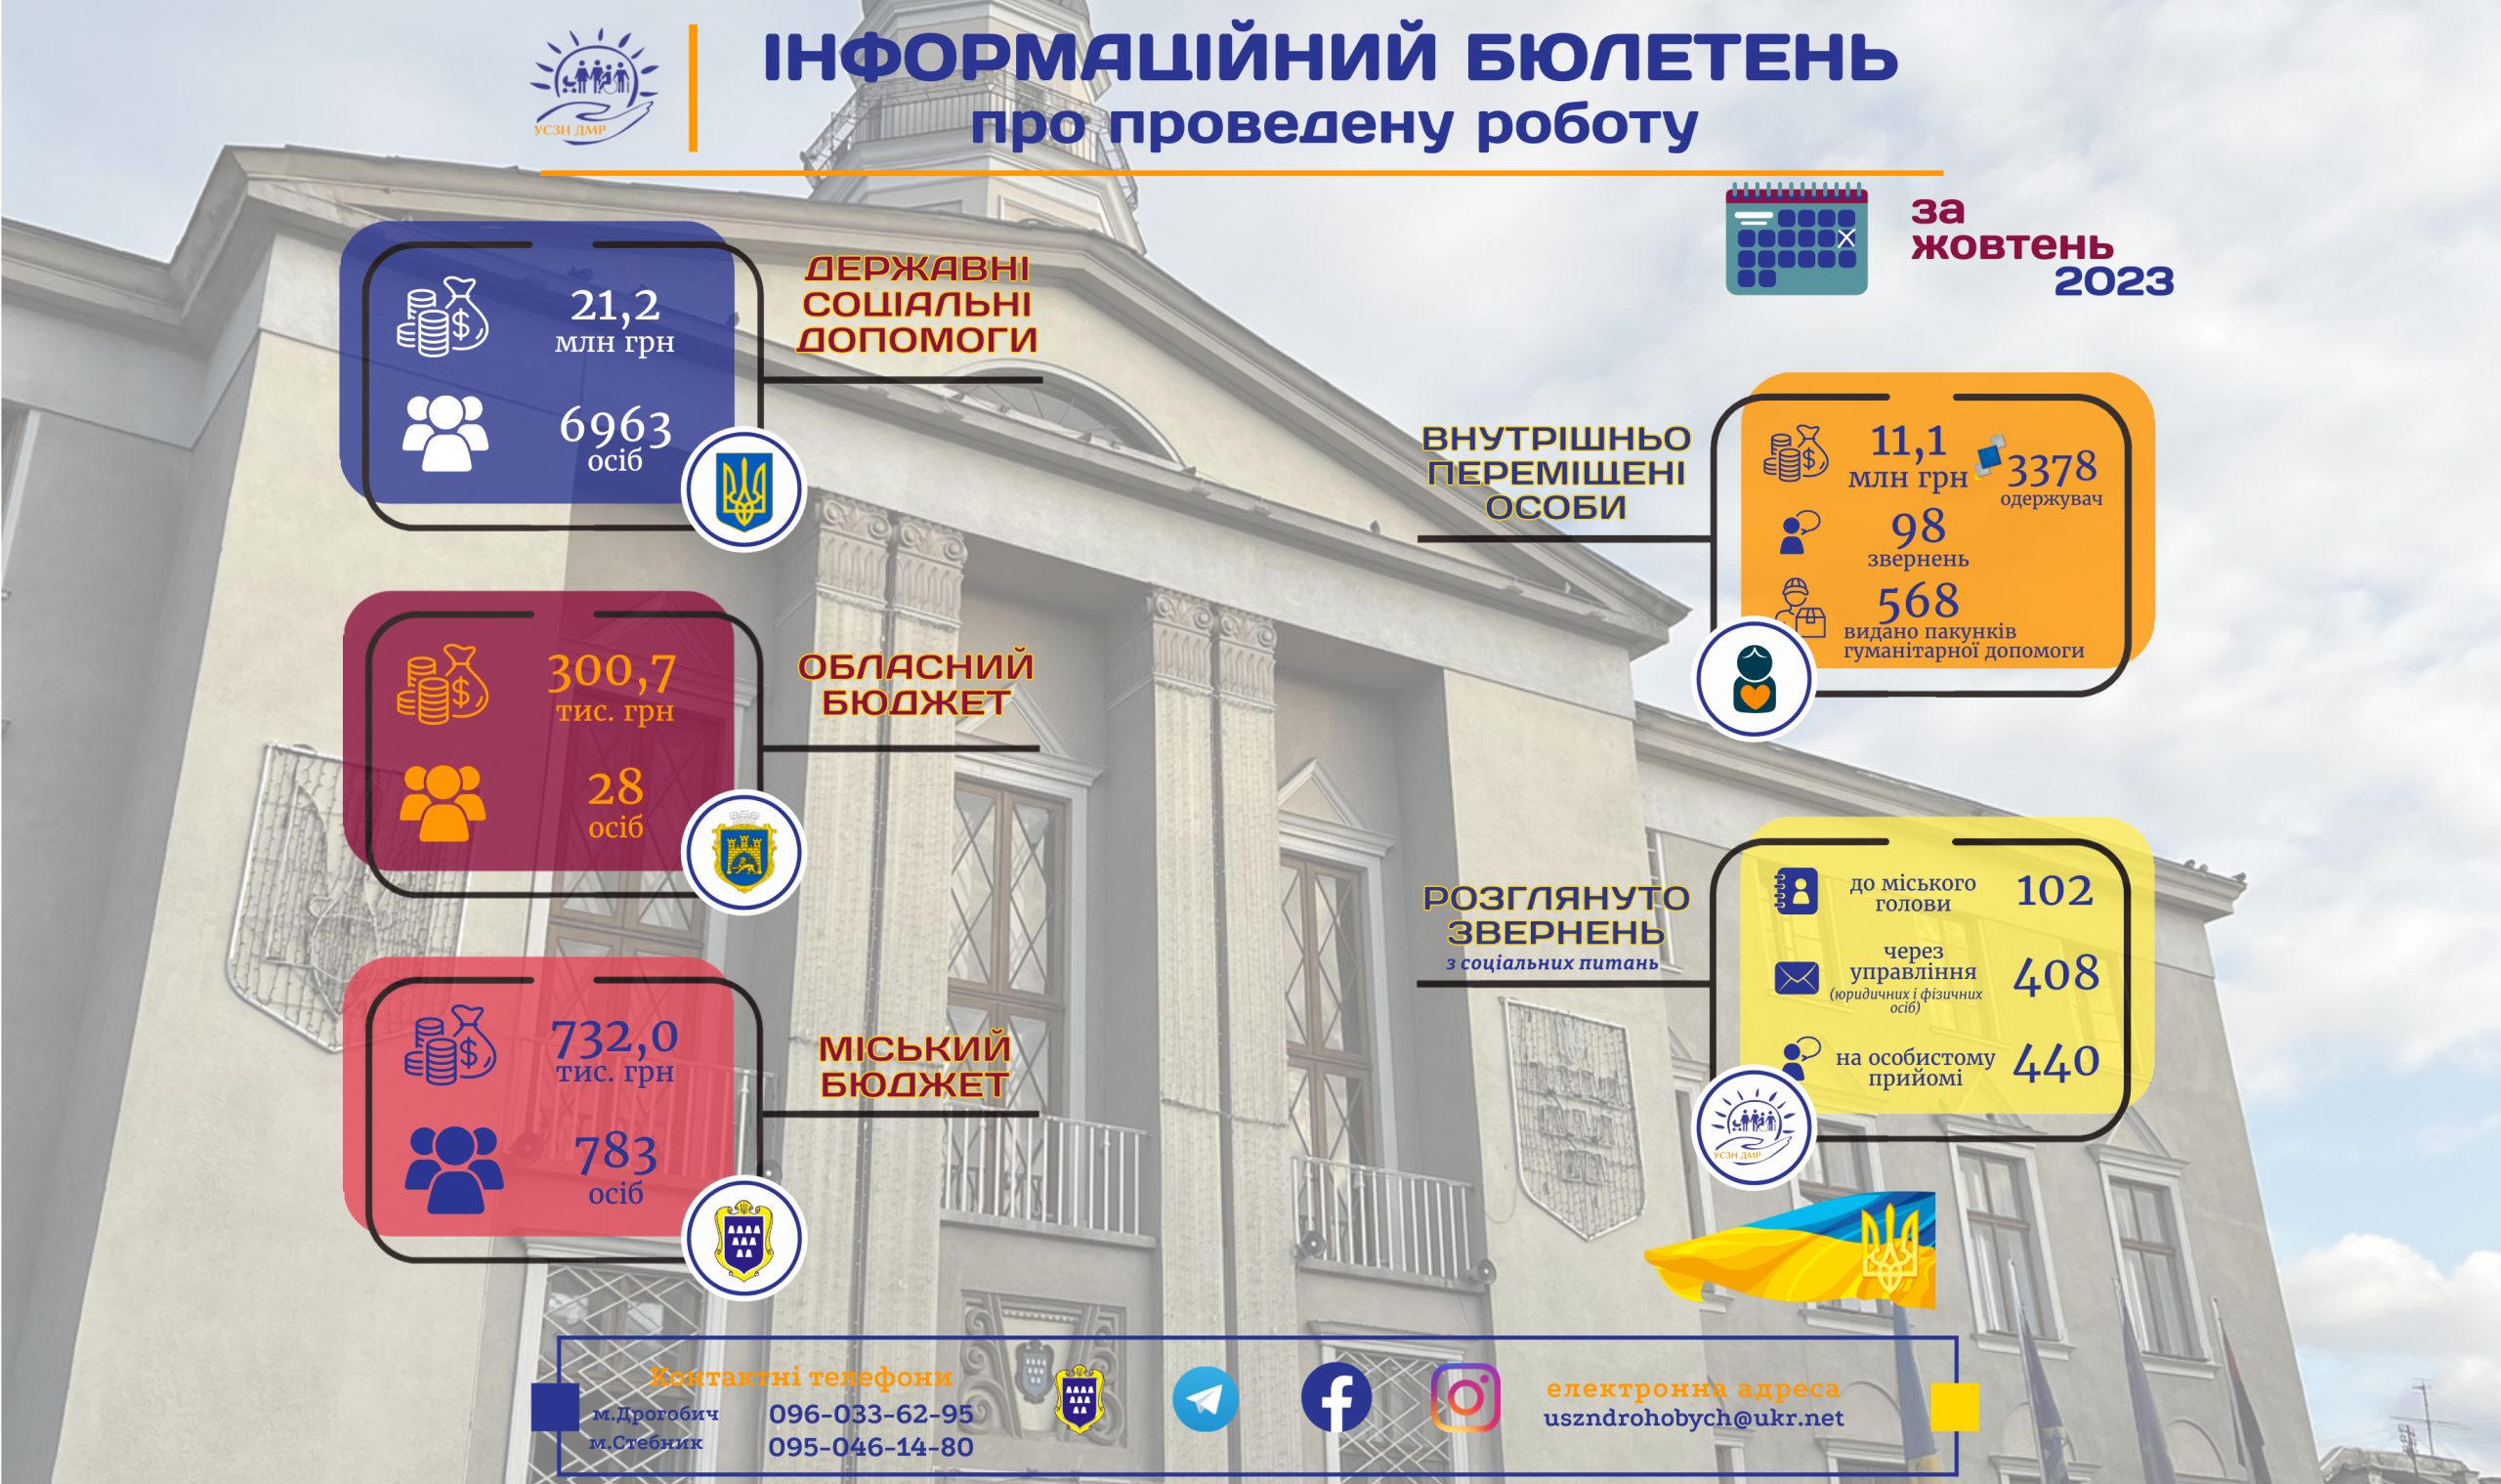 Інформаційний бюлетень про проведену роботу управління соціального захисту населення Дрогобицької міської ради за жовтень 2023р.